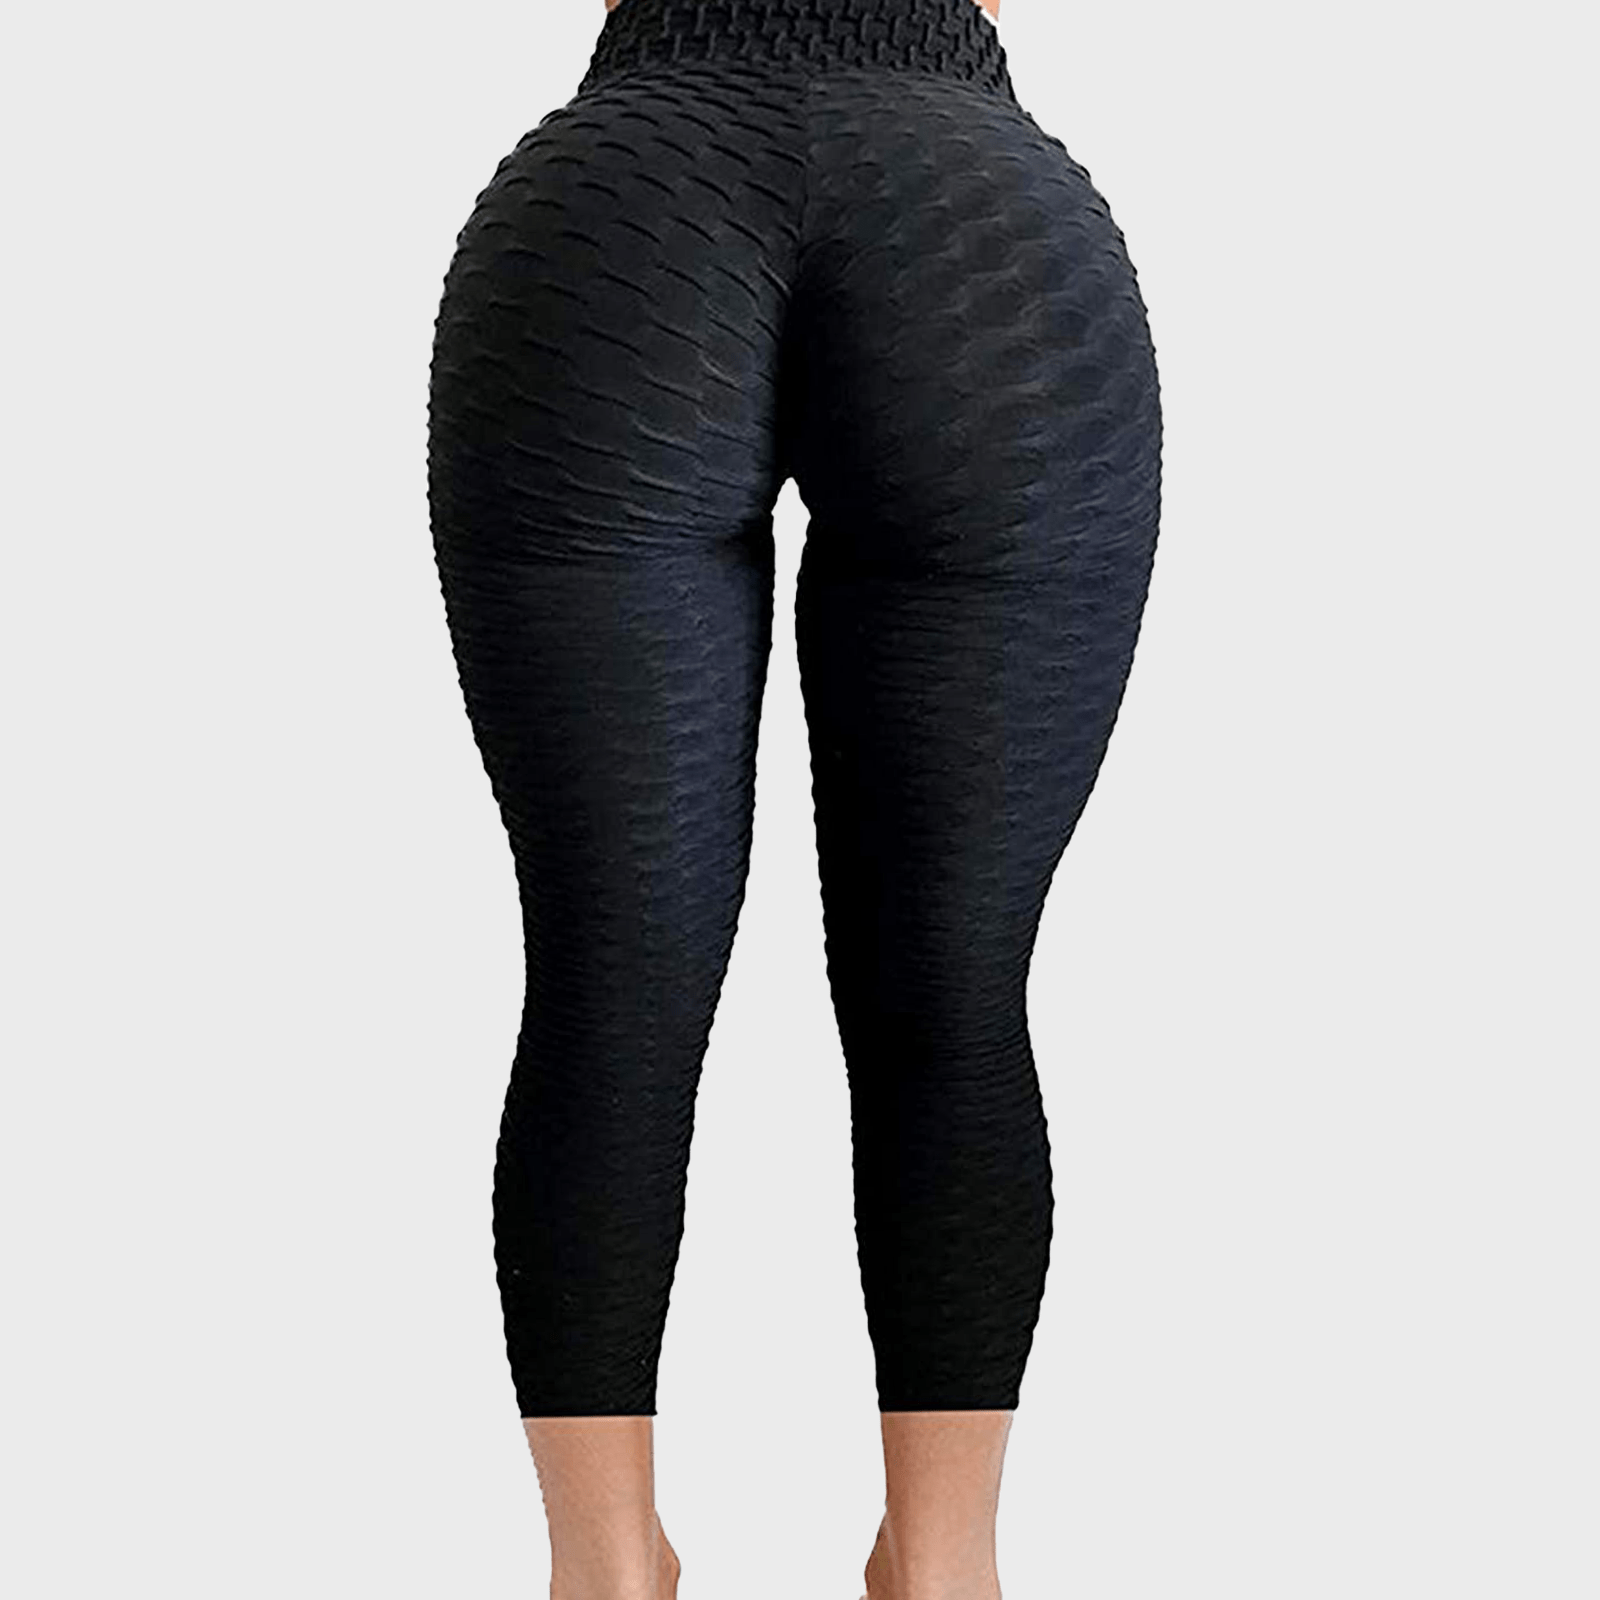 Big Butt Yoga Pants